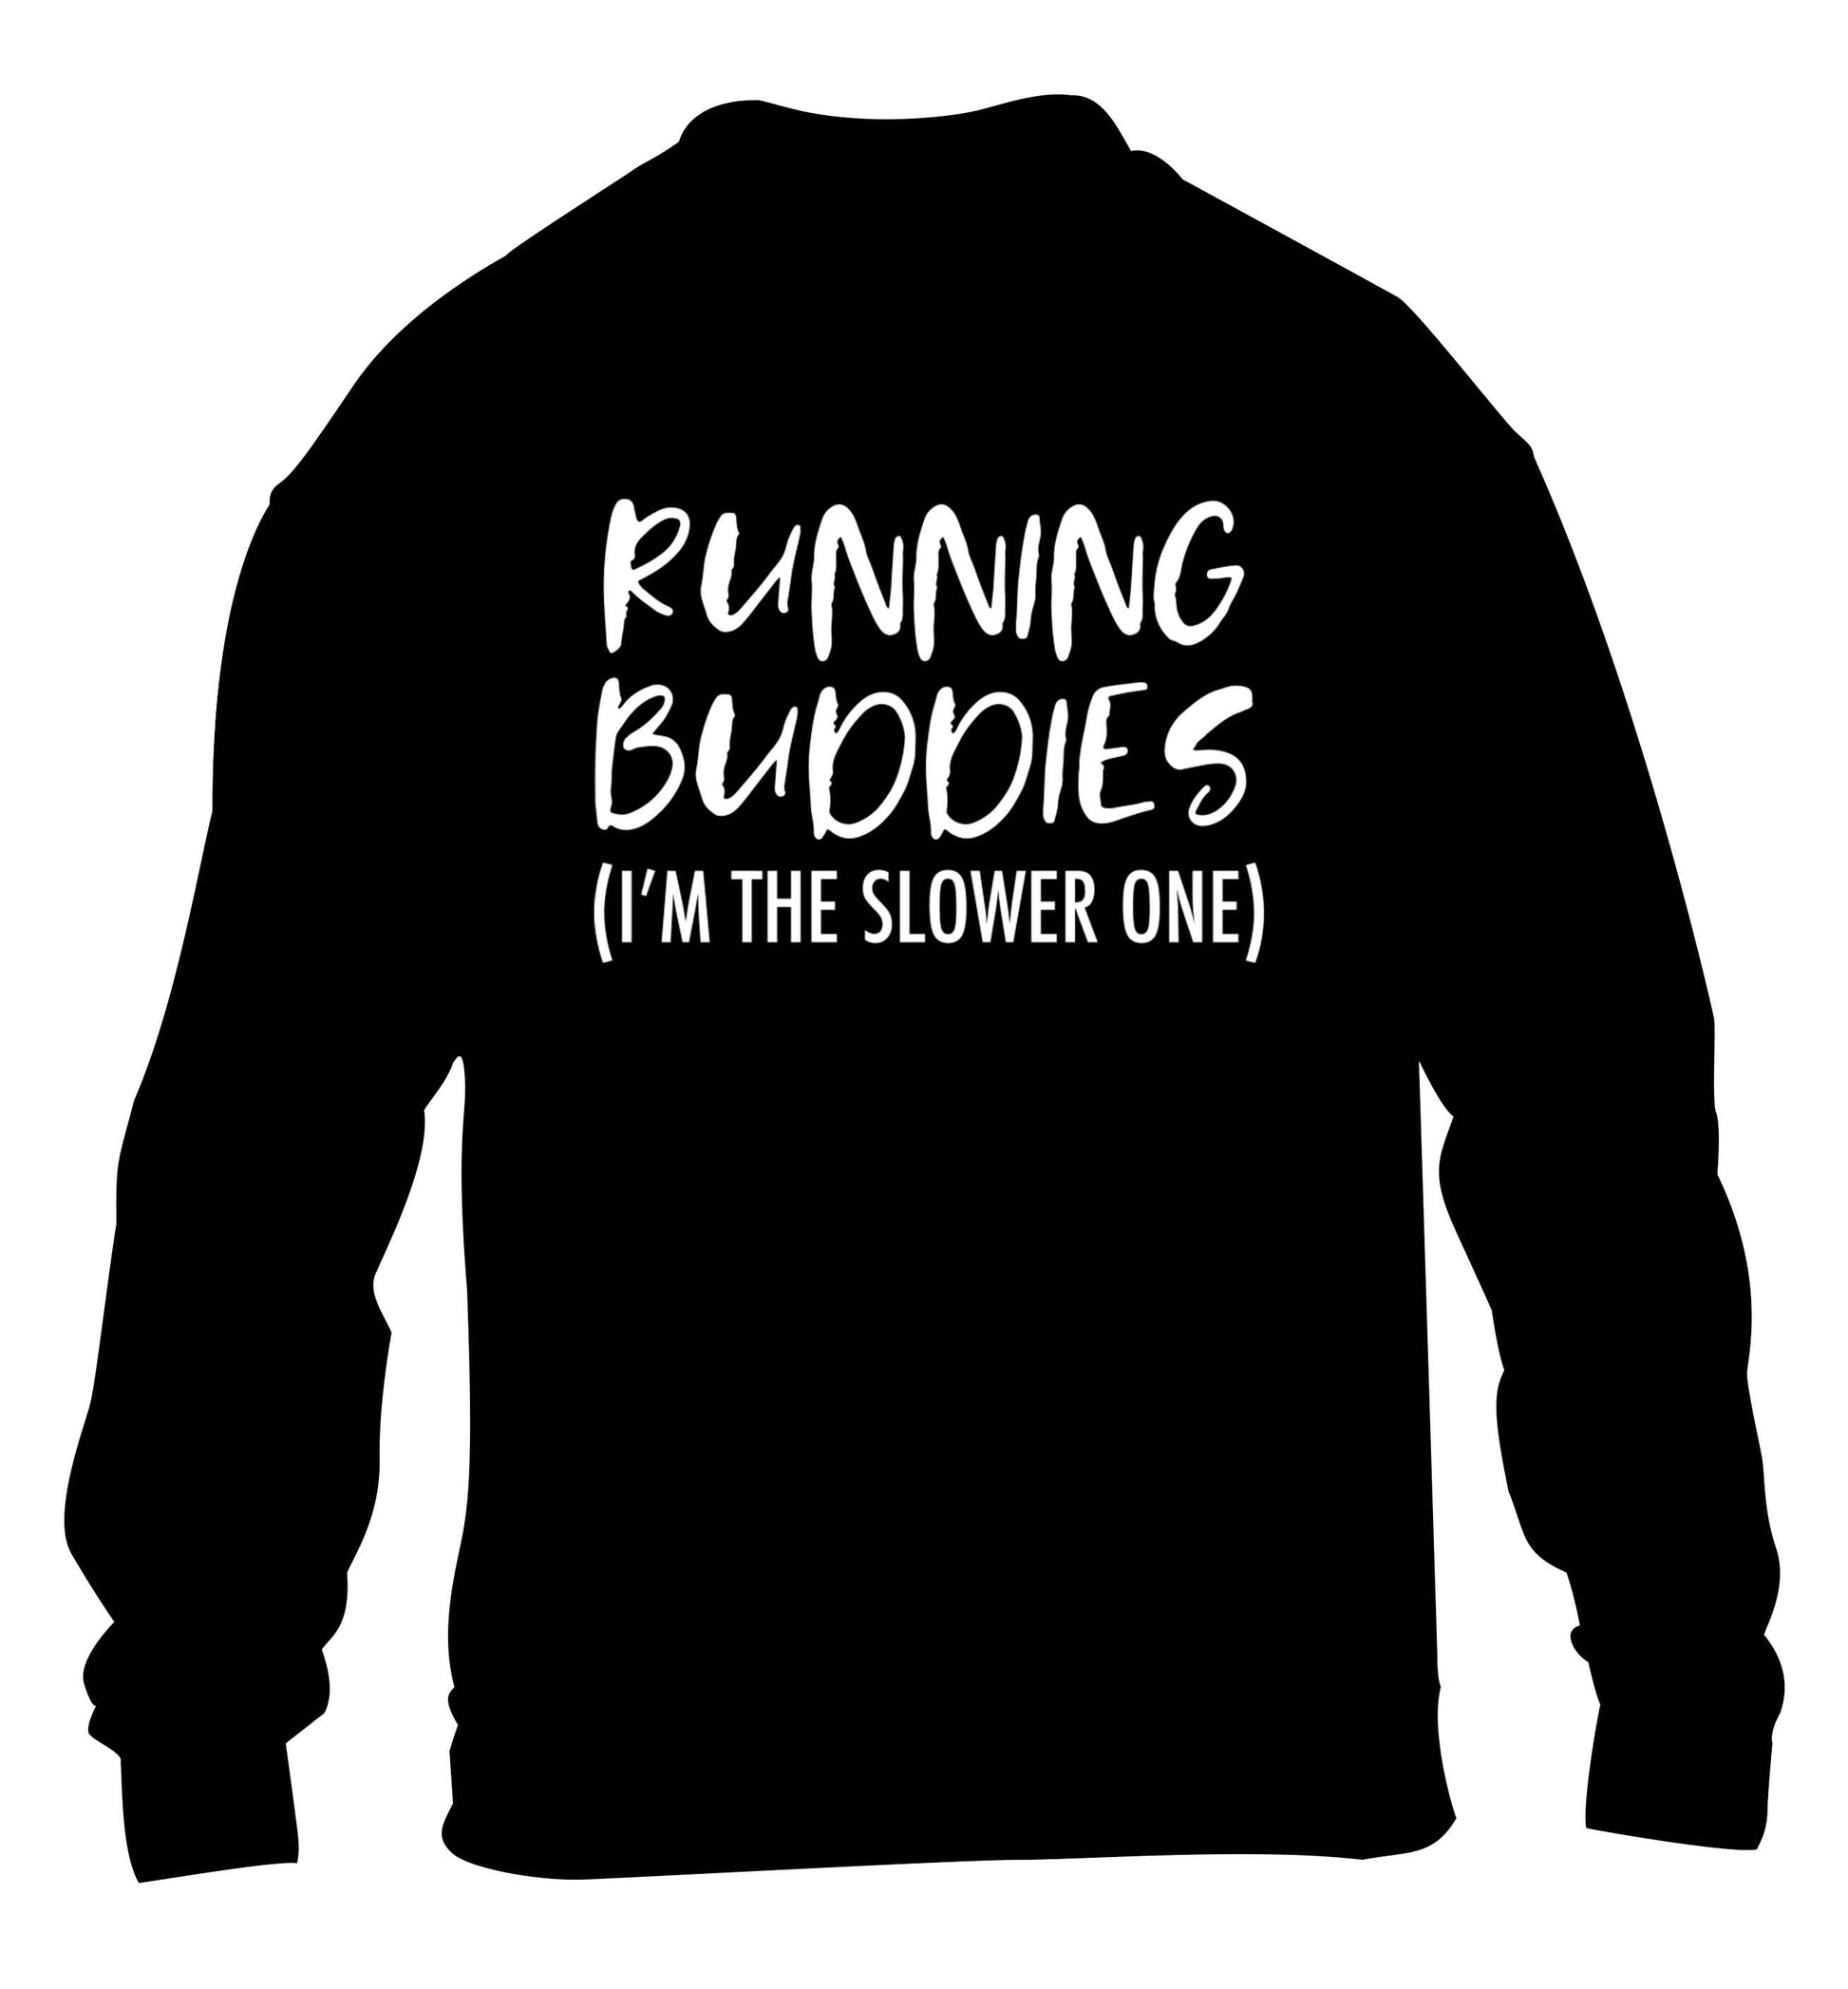 Running buddies (I'm the slower one) children's black sweater 12-13 Years